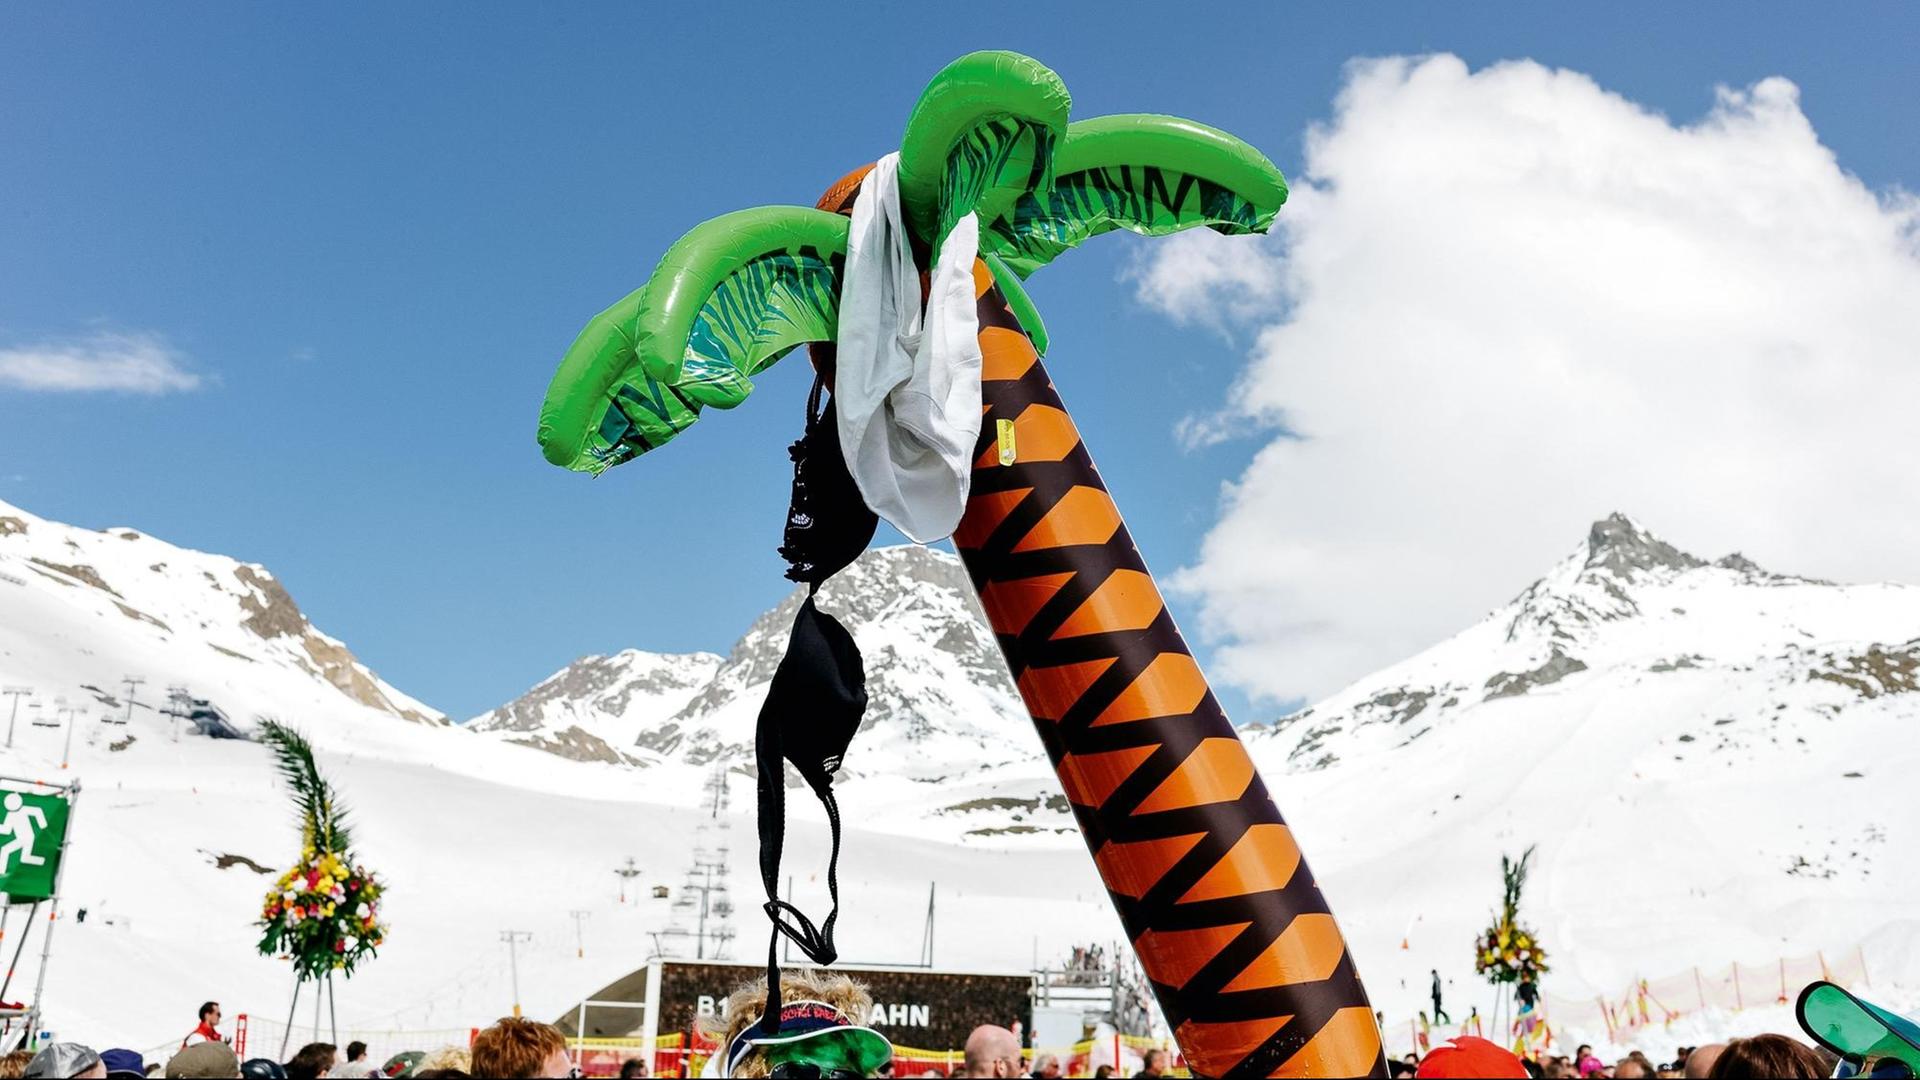 Eine aufblasbare Palme, an der ein BH hängt, steht vor einem schneebedecktem Alpenpanorama.